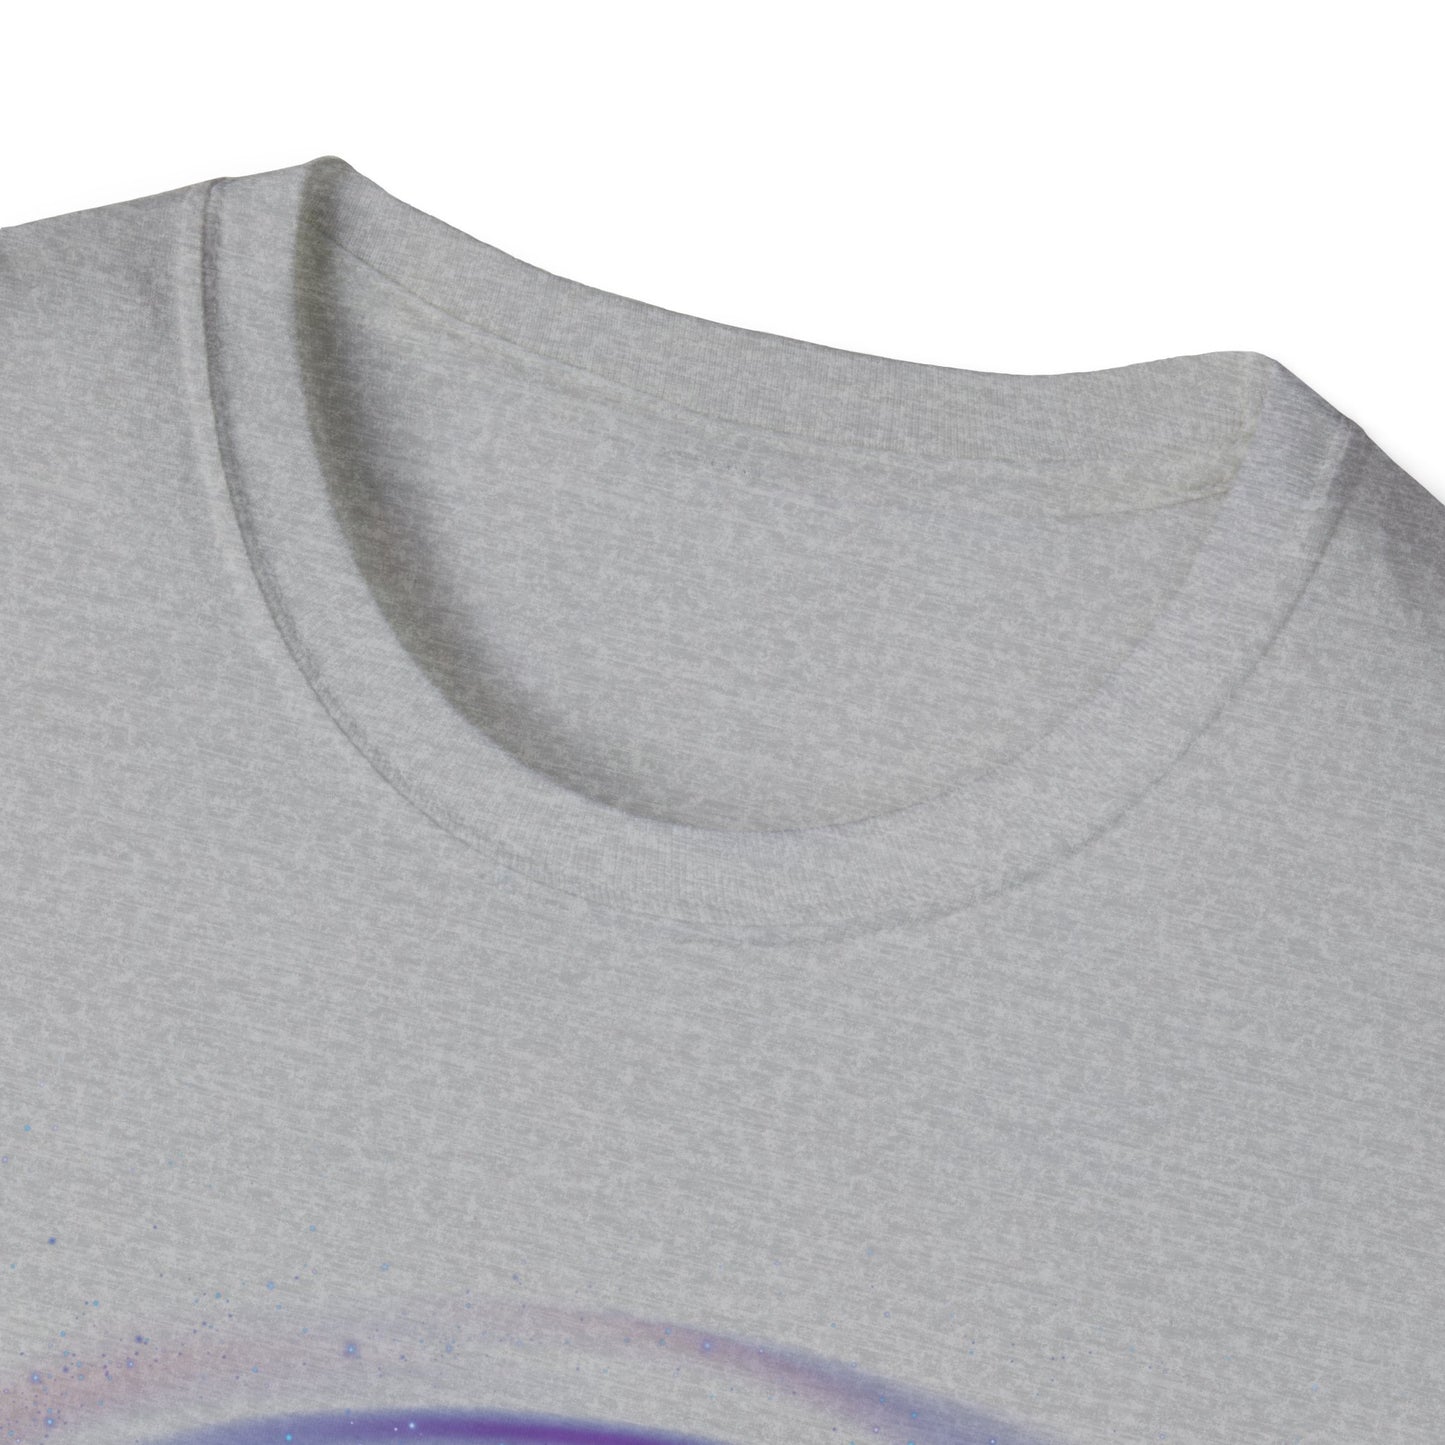 Unisex-Kurzarm-T-Shirt mit englischem Spruch über das Sonnensystem